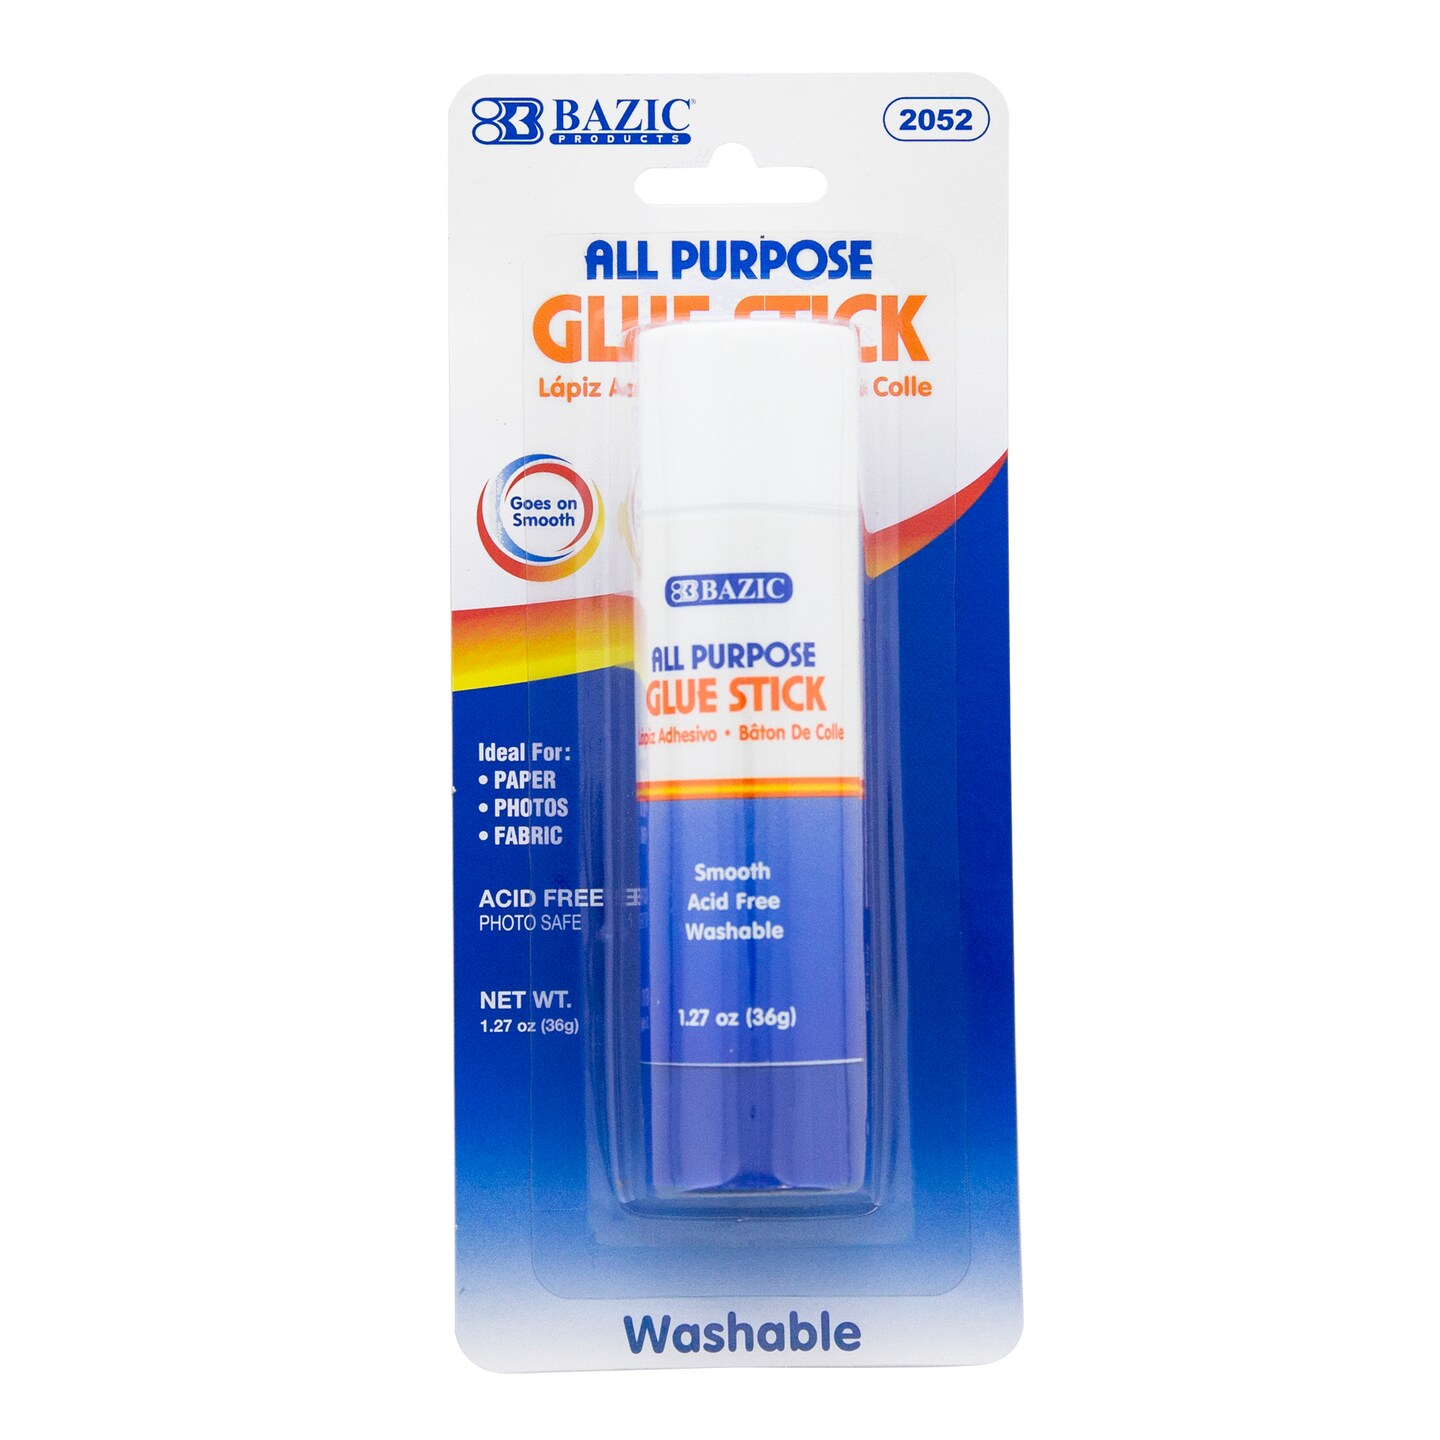 BAZIC Glue Stick Premium 1.27 oz (36g)